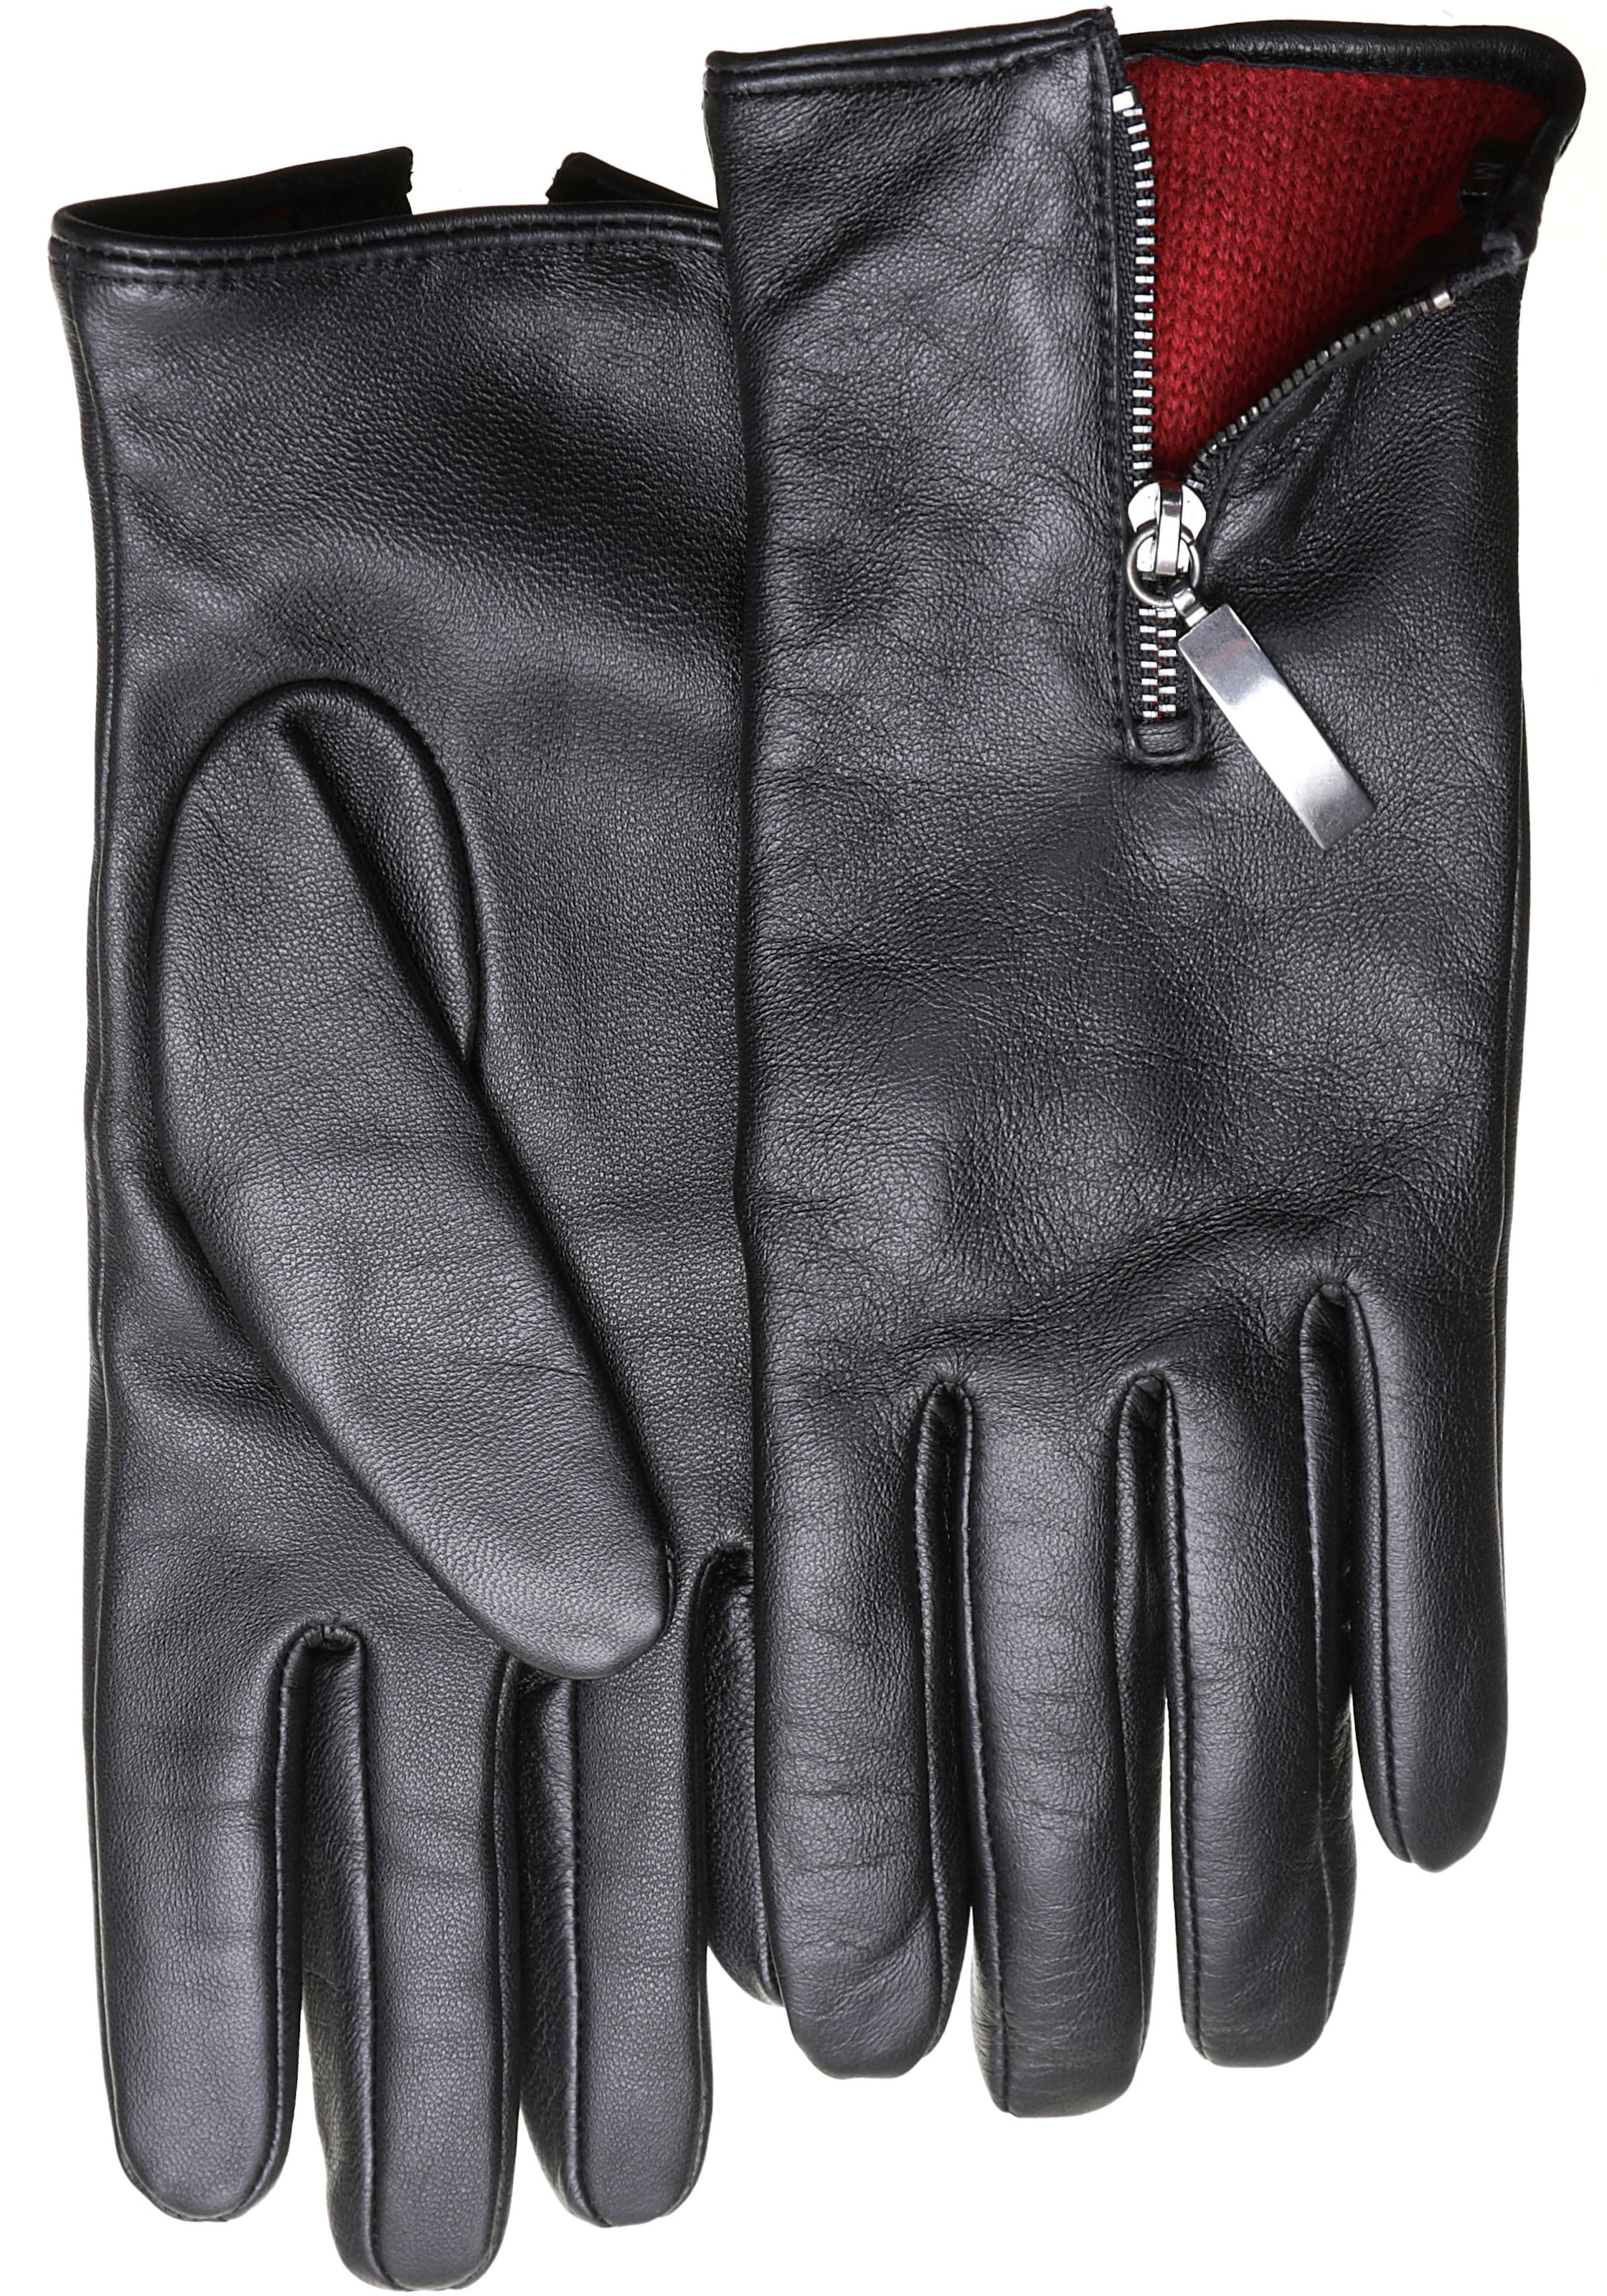 PEARLWOOD Lederhandschuhe Handrücken auf dem »Helena« Glattleder mit Zipper farbigem Innenfutter